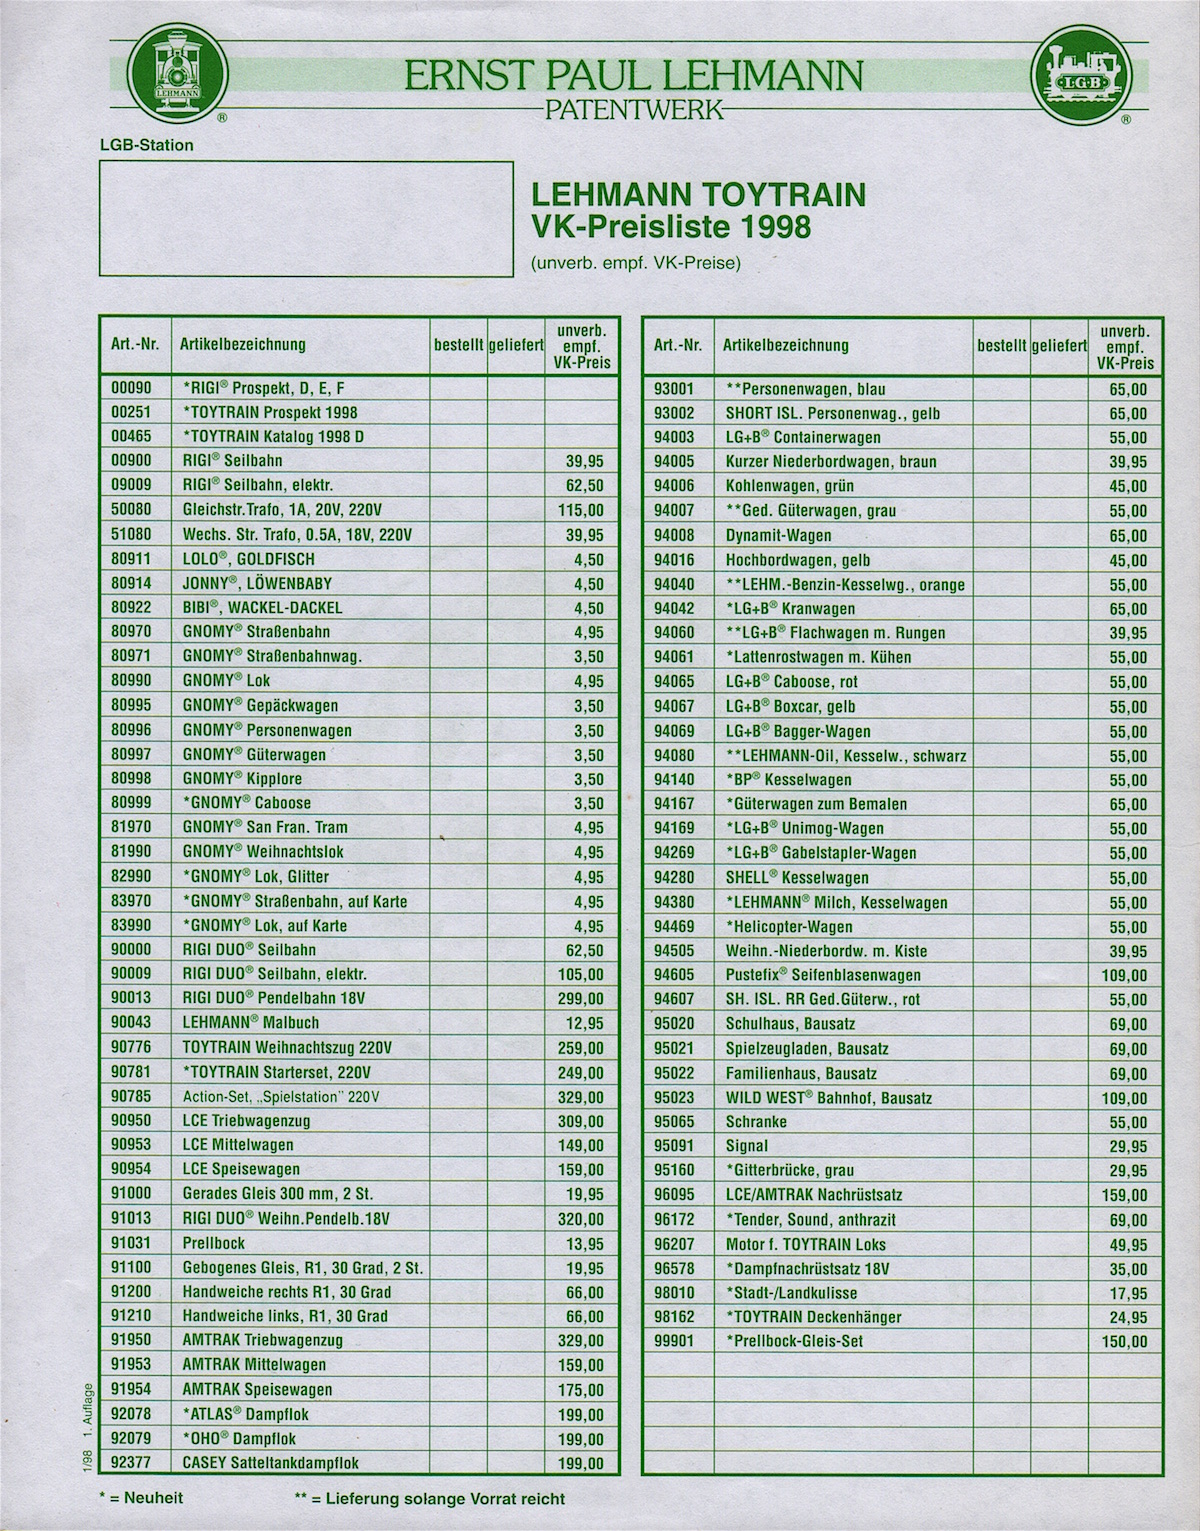 Lehmann Preisliste (Price list) 1998 (Toy Train))